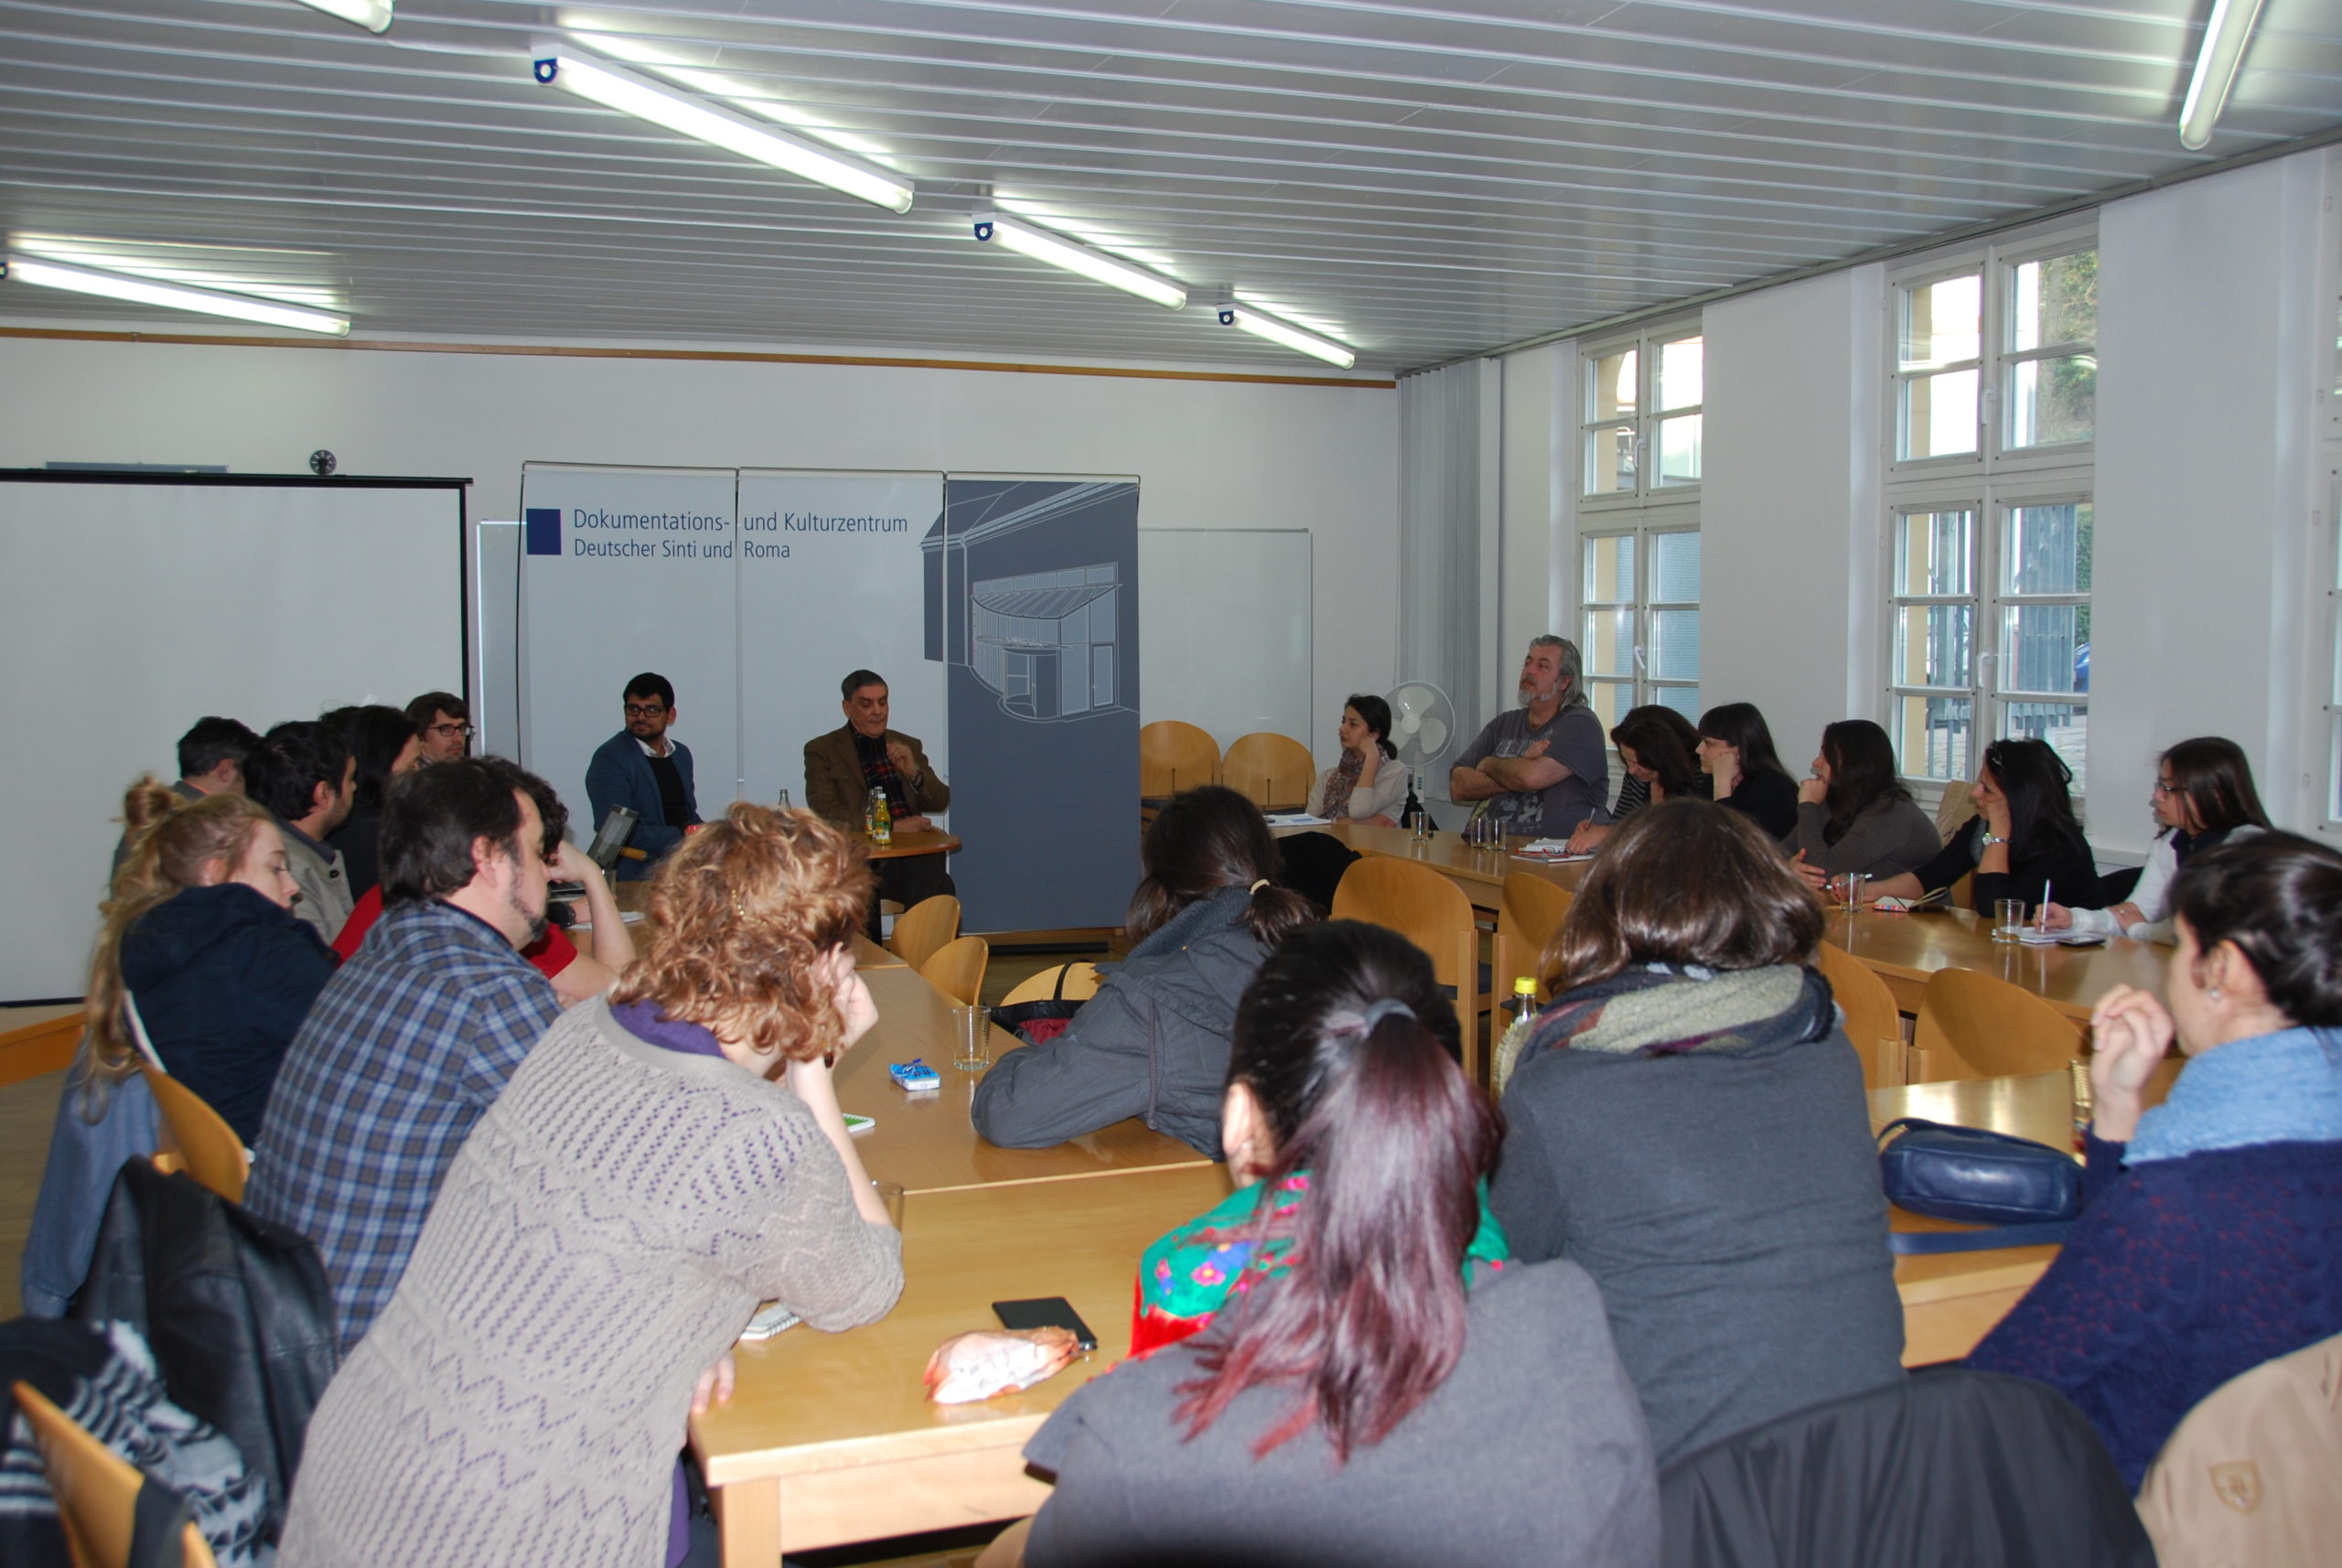 Teilnehmer des Workshops sitzen zusammen im Besprechungsraum des Dokumentationszentrums.